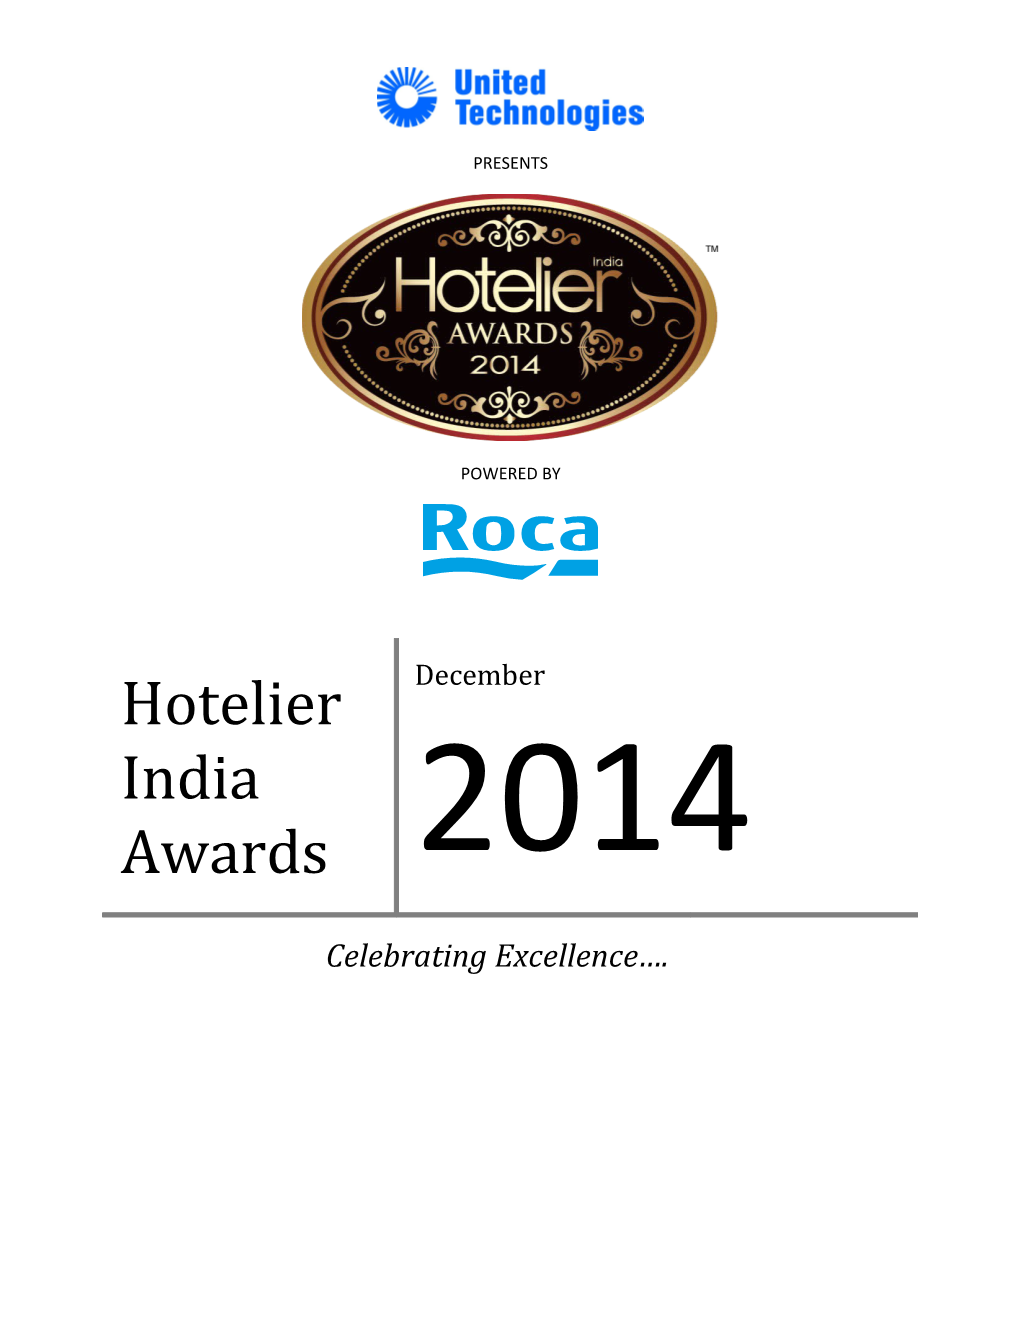 Hotelier India Awards